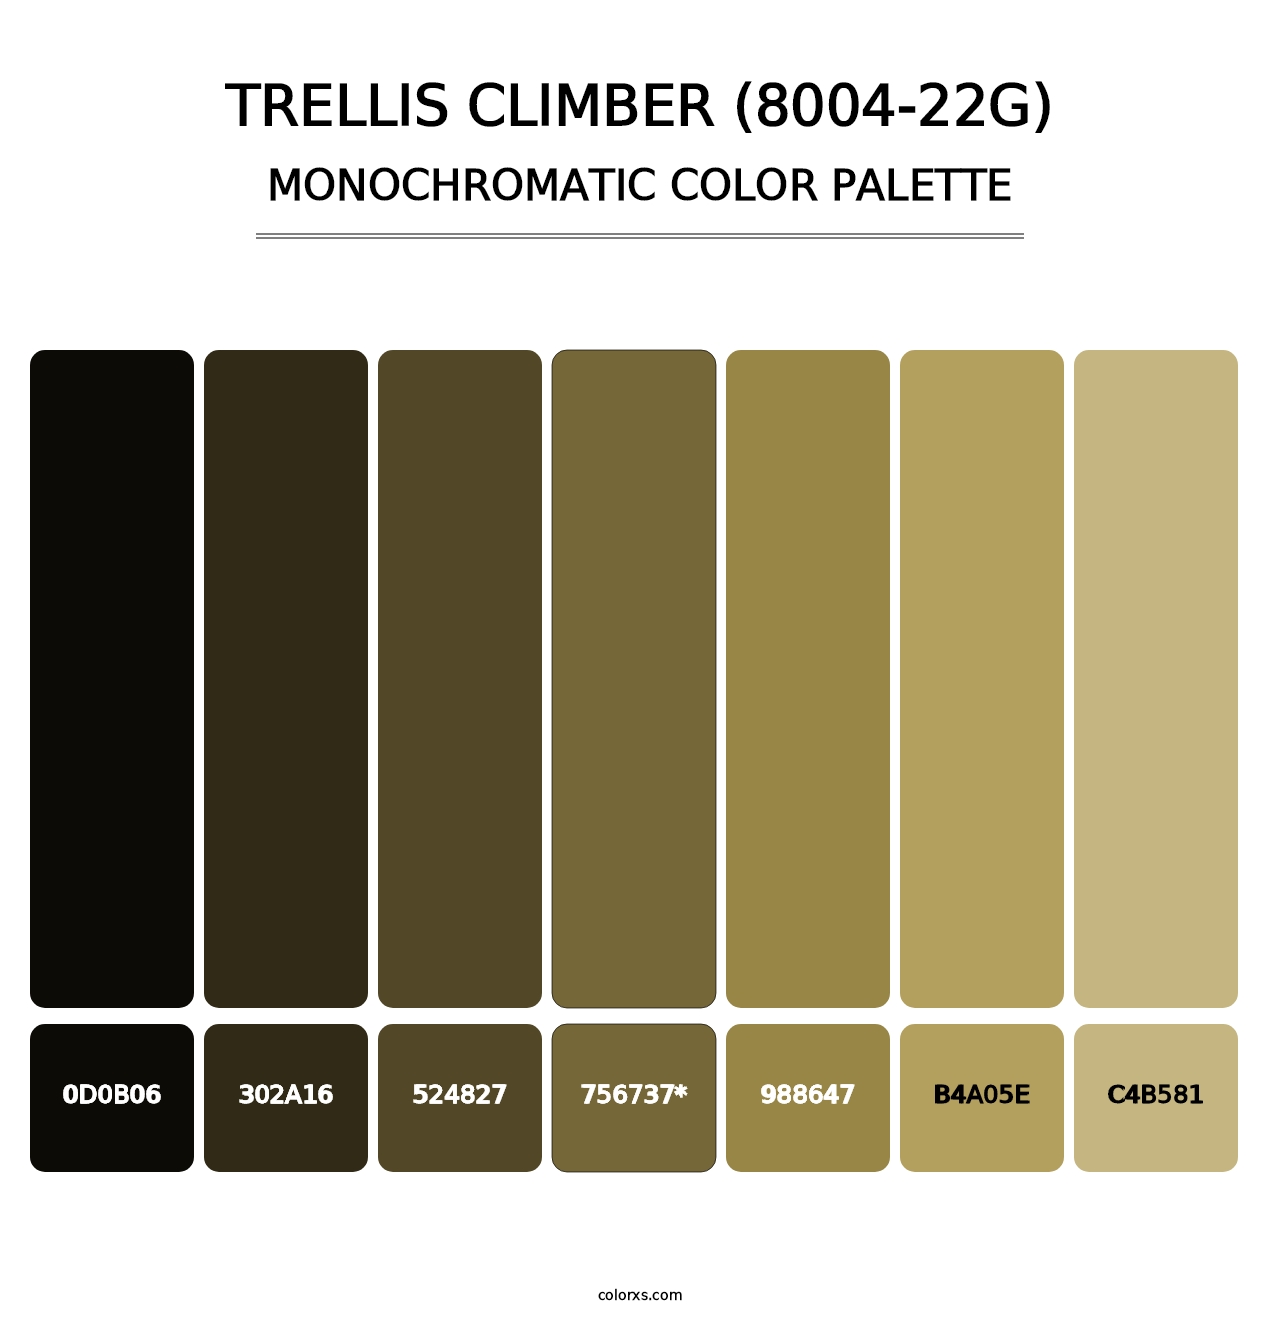 Trellis Climber (8004-22G) - Monochromatic Color Palette